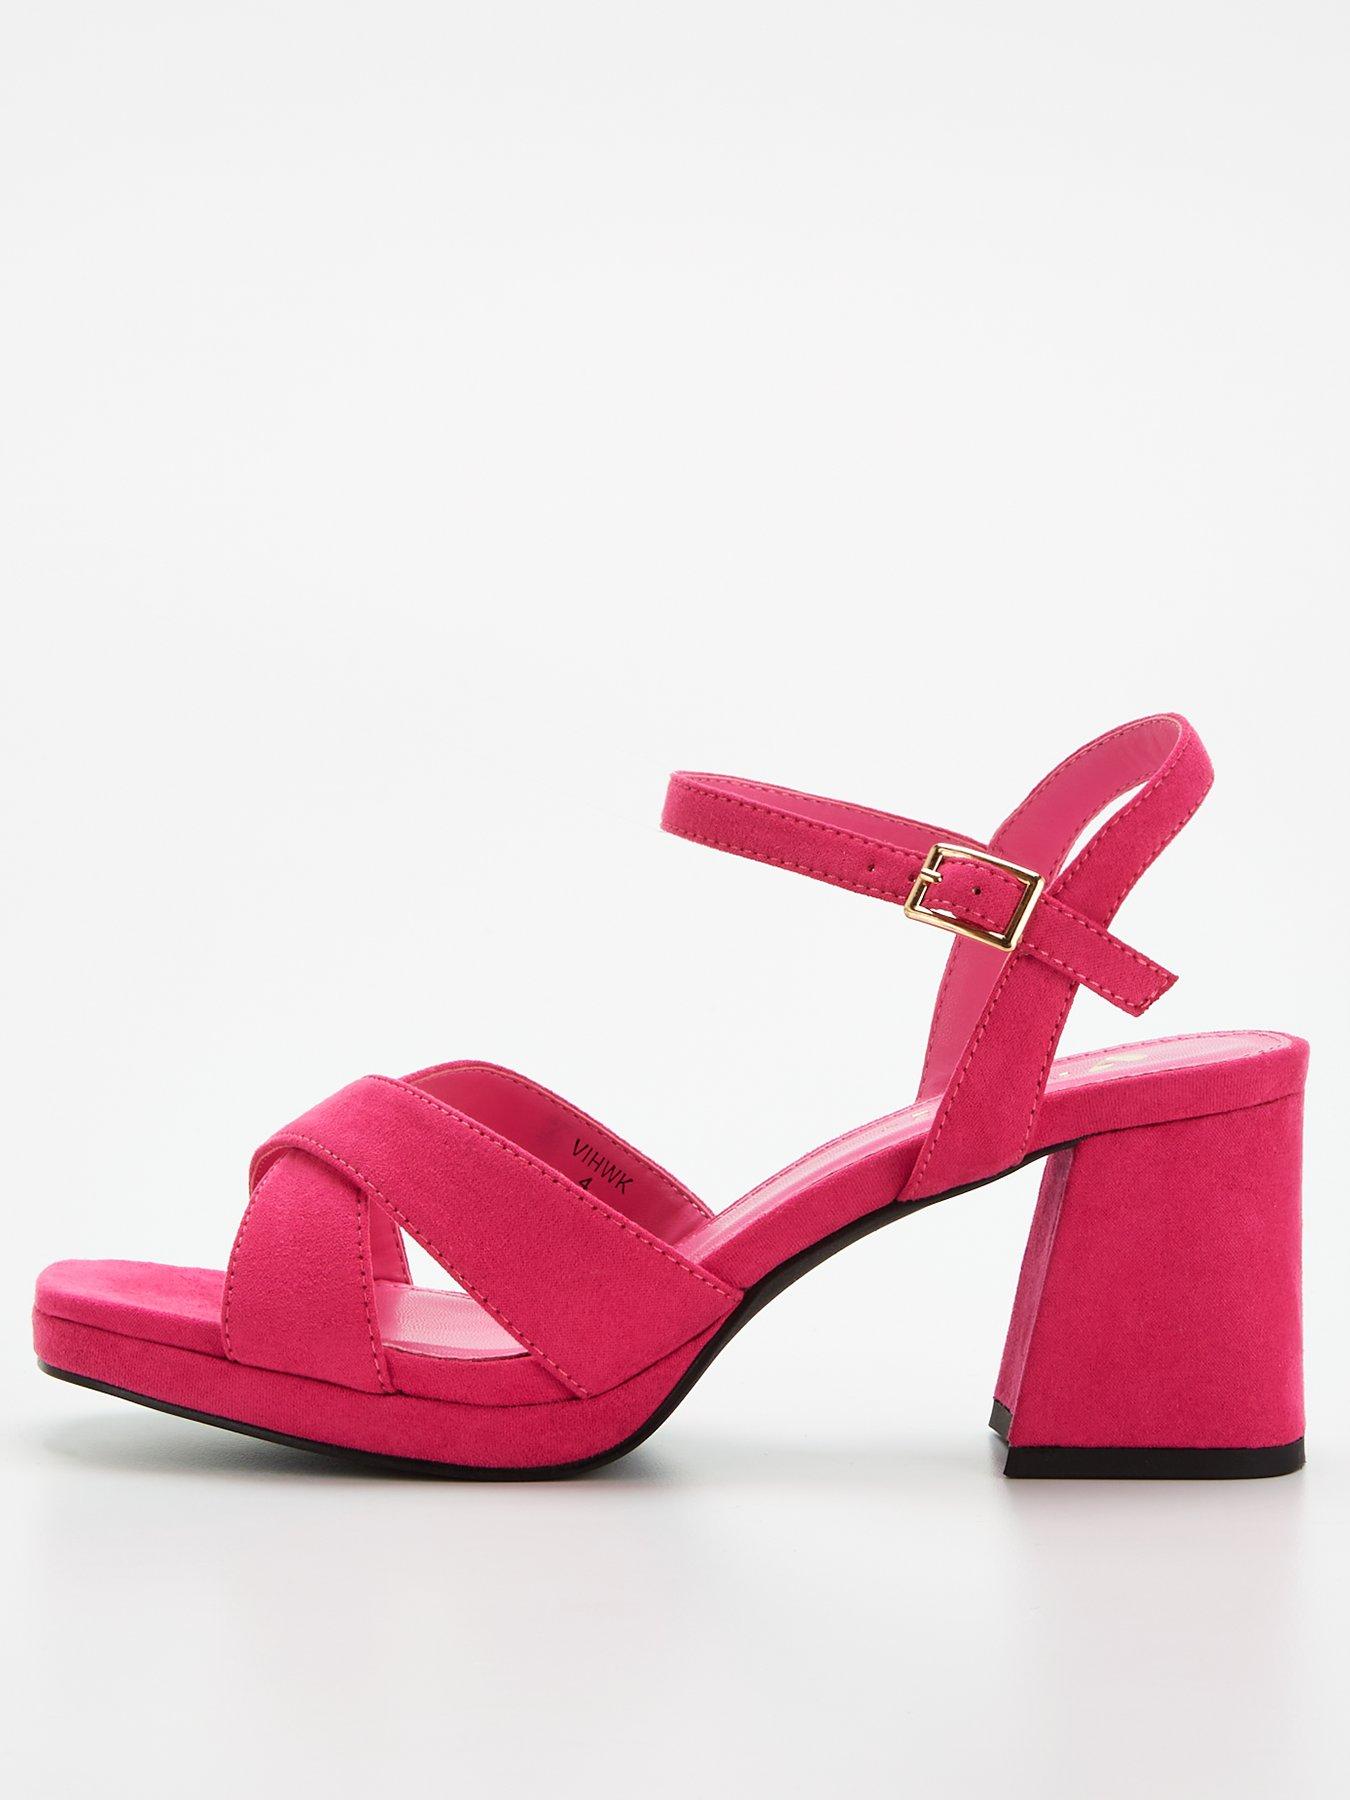 Shop Heels For Women Online | Steve Madden Malaysia